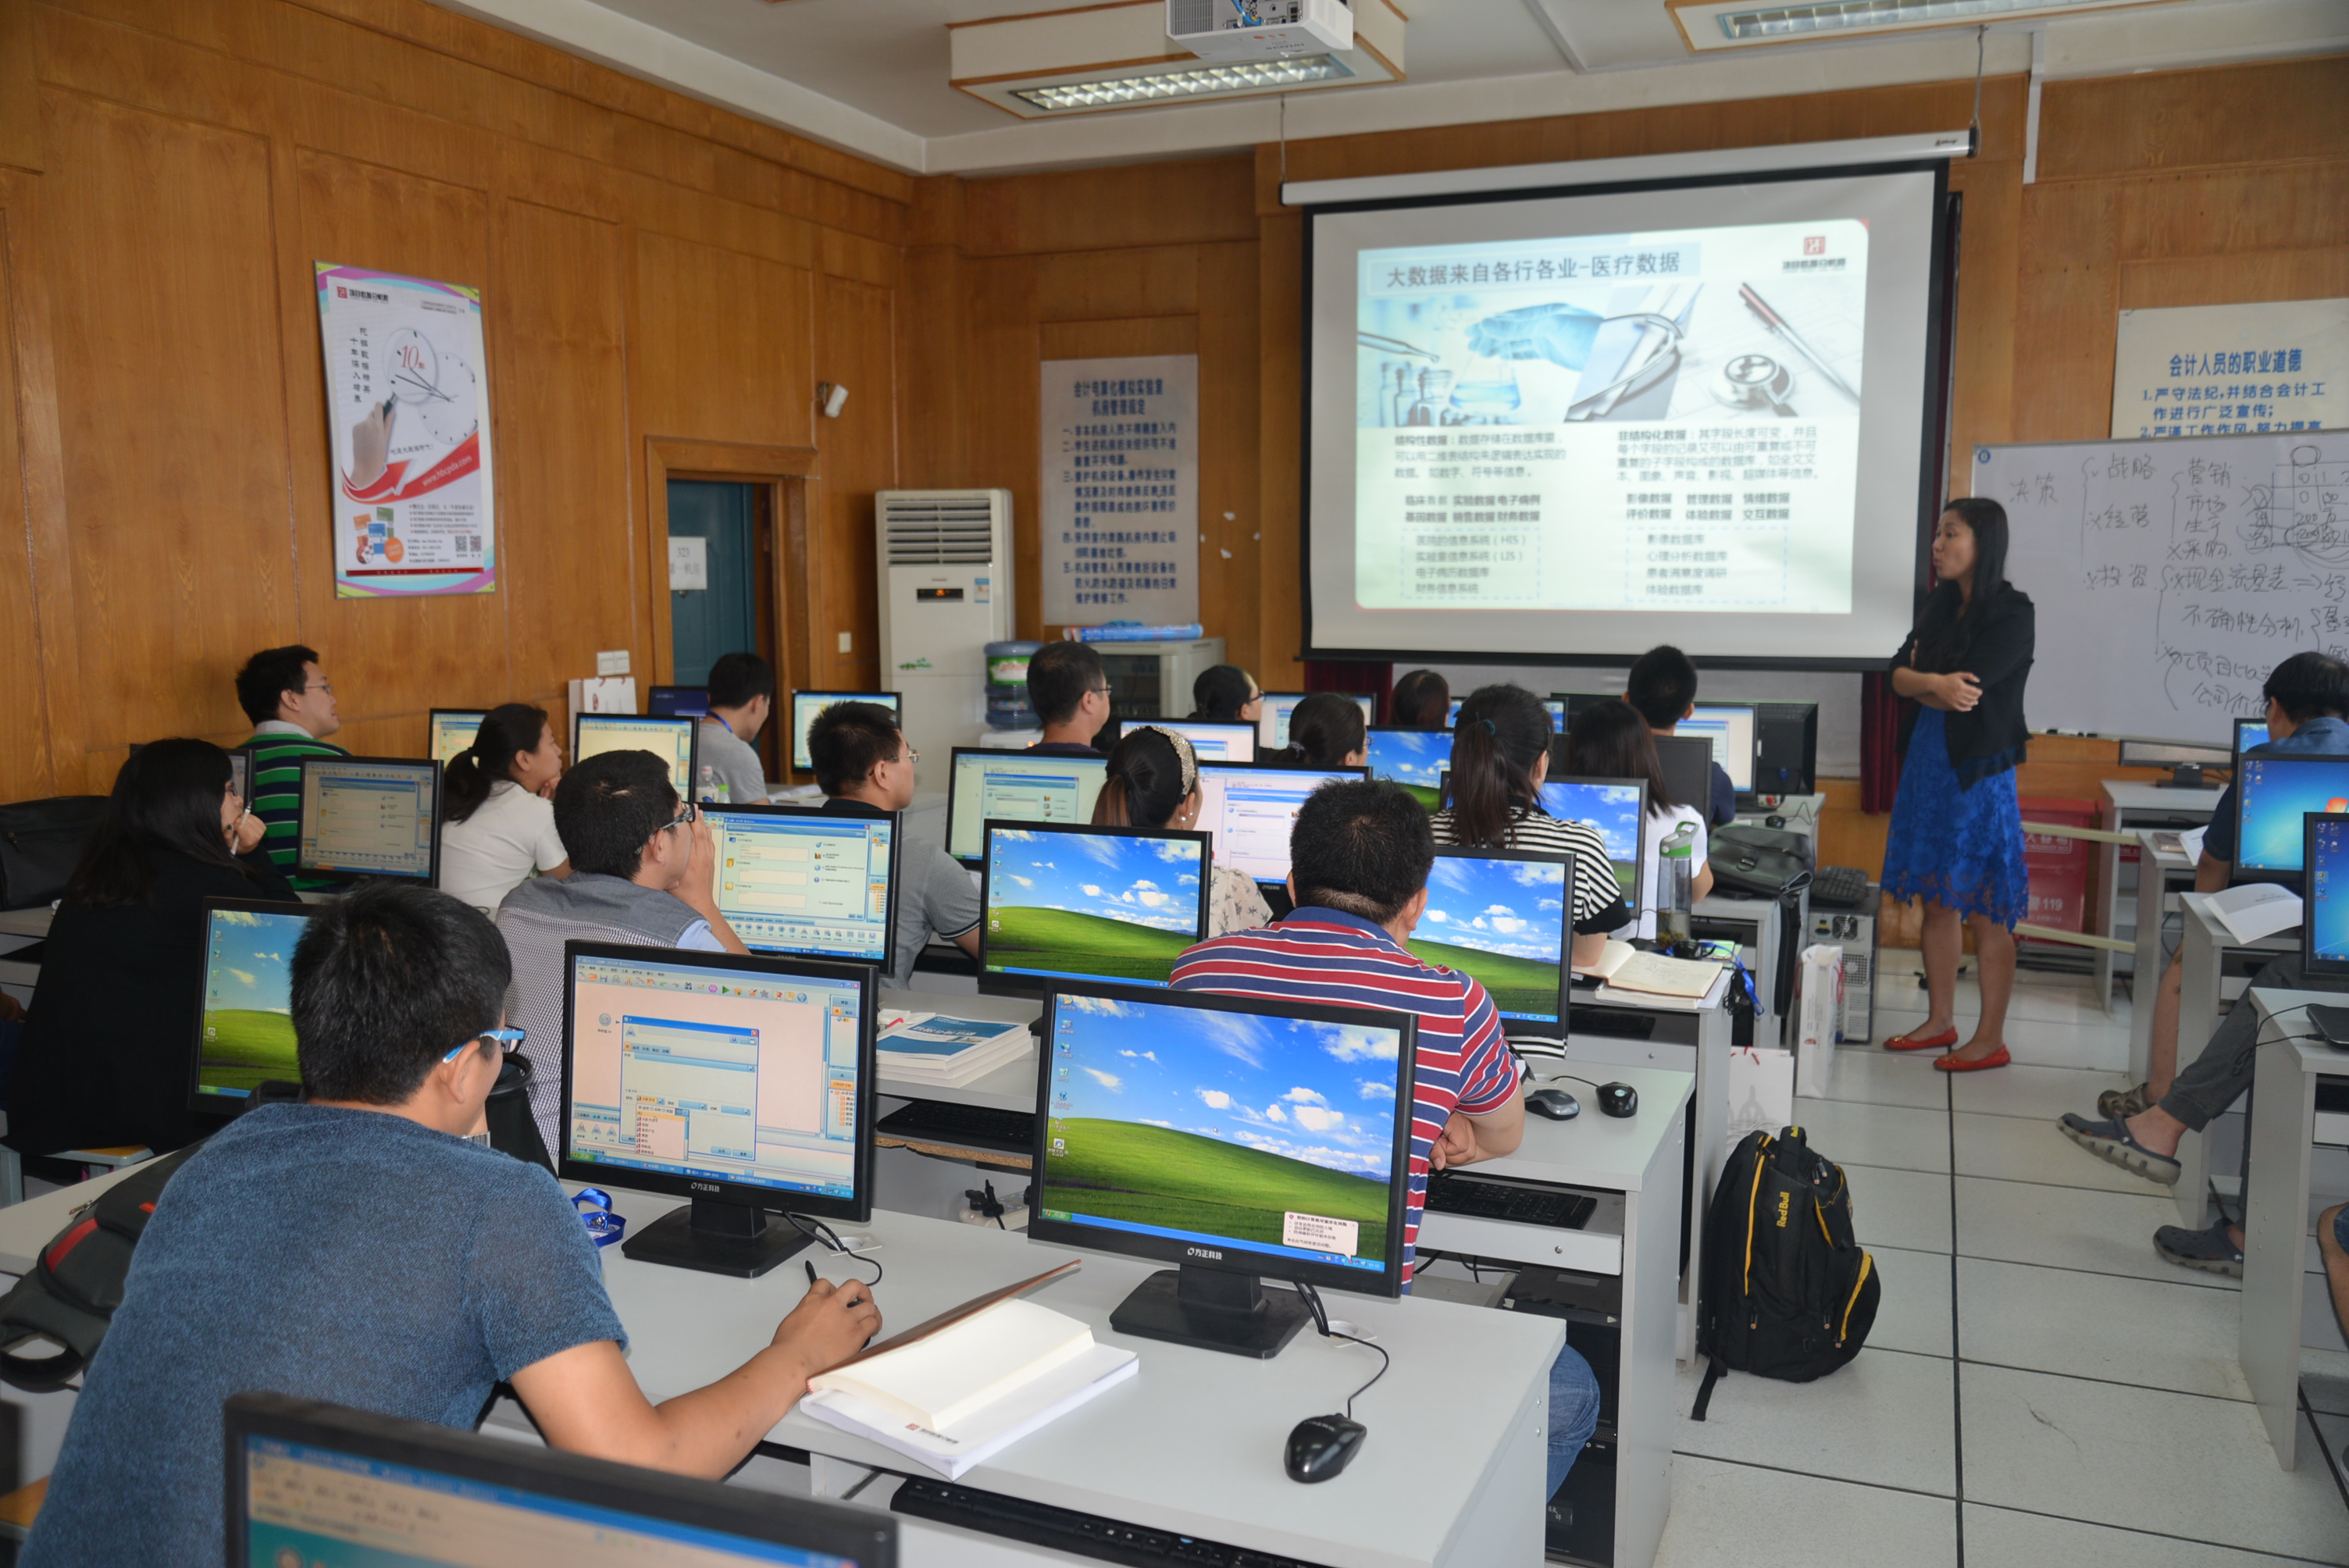 贵州首期数据分析师培训班开班 1